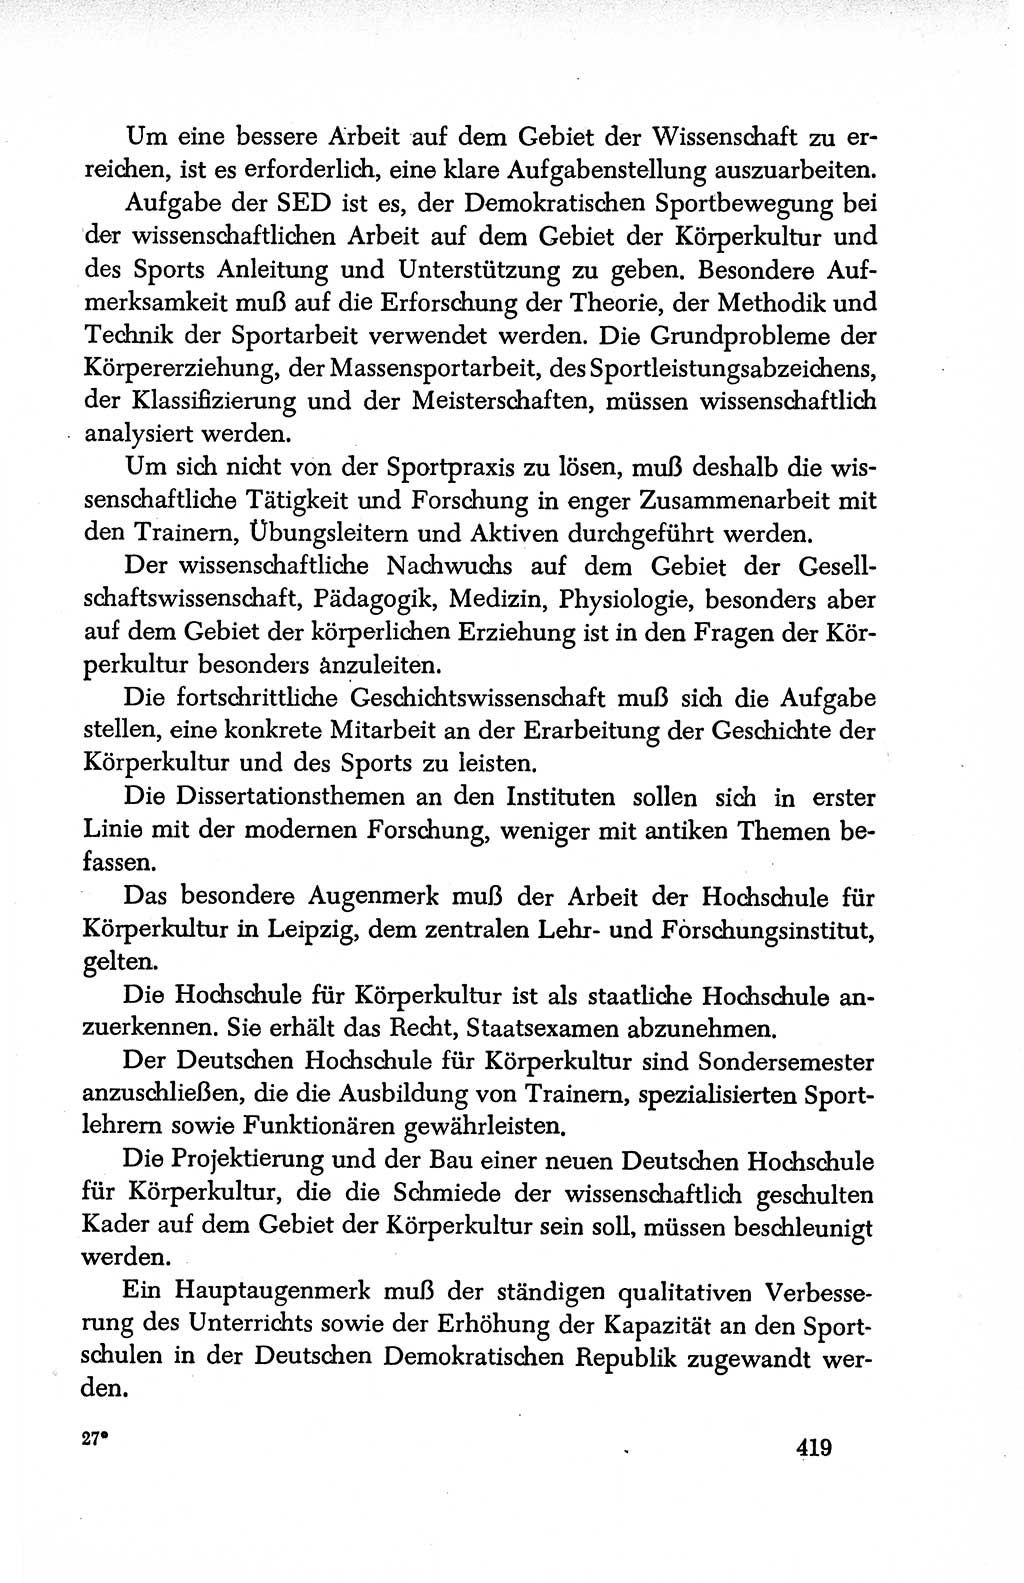 Dokumente der Sozialistischen Einheitspartei Deutschlands (SED) [Deutsche Demokratische Republik (DDR)] 1950-1952, Seite 419 (Dok. SED DDR 1950-1952, S. 419)